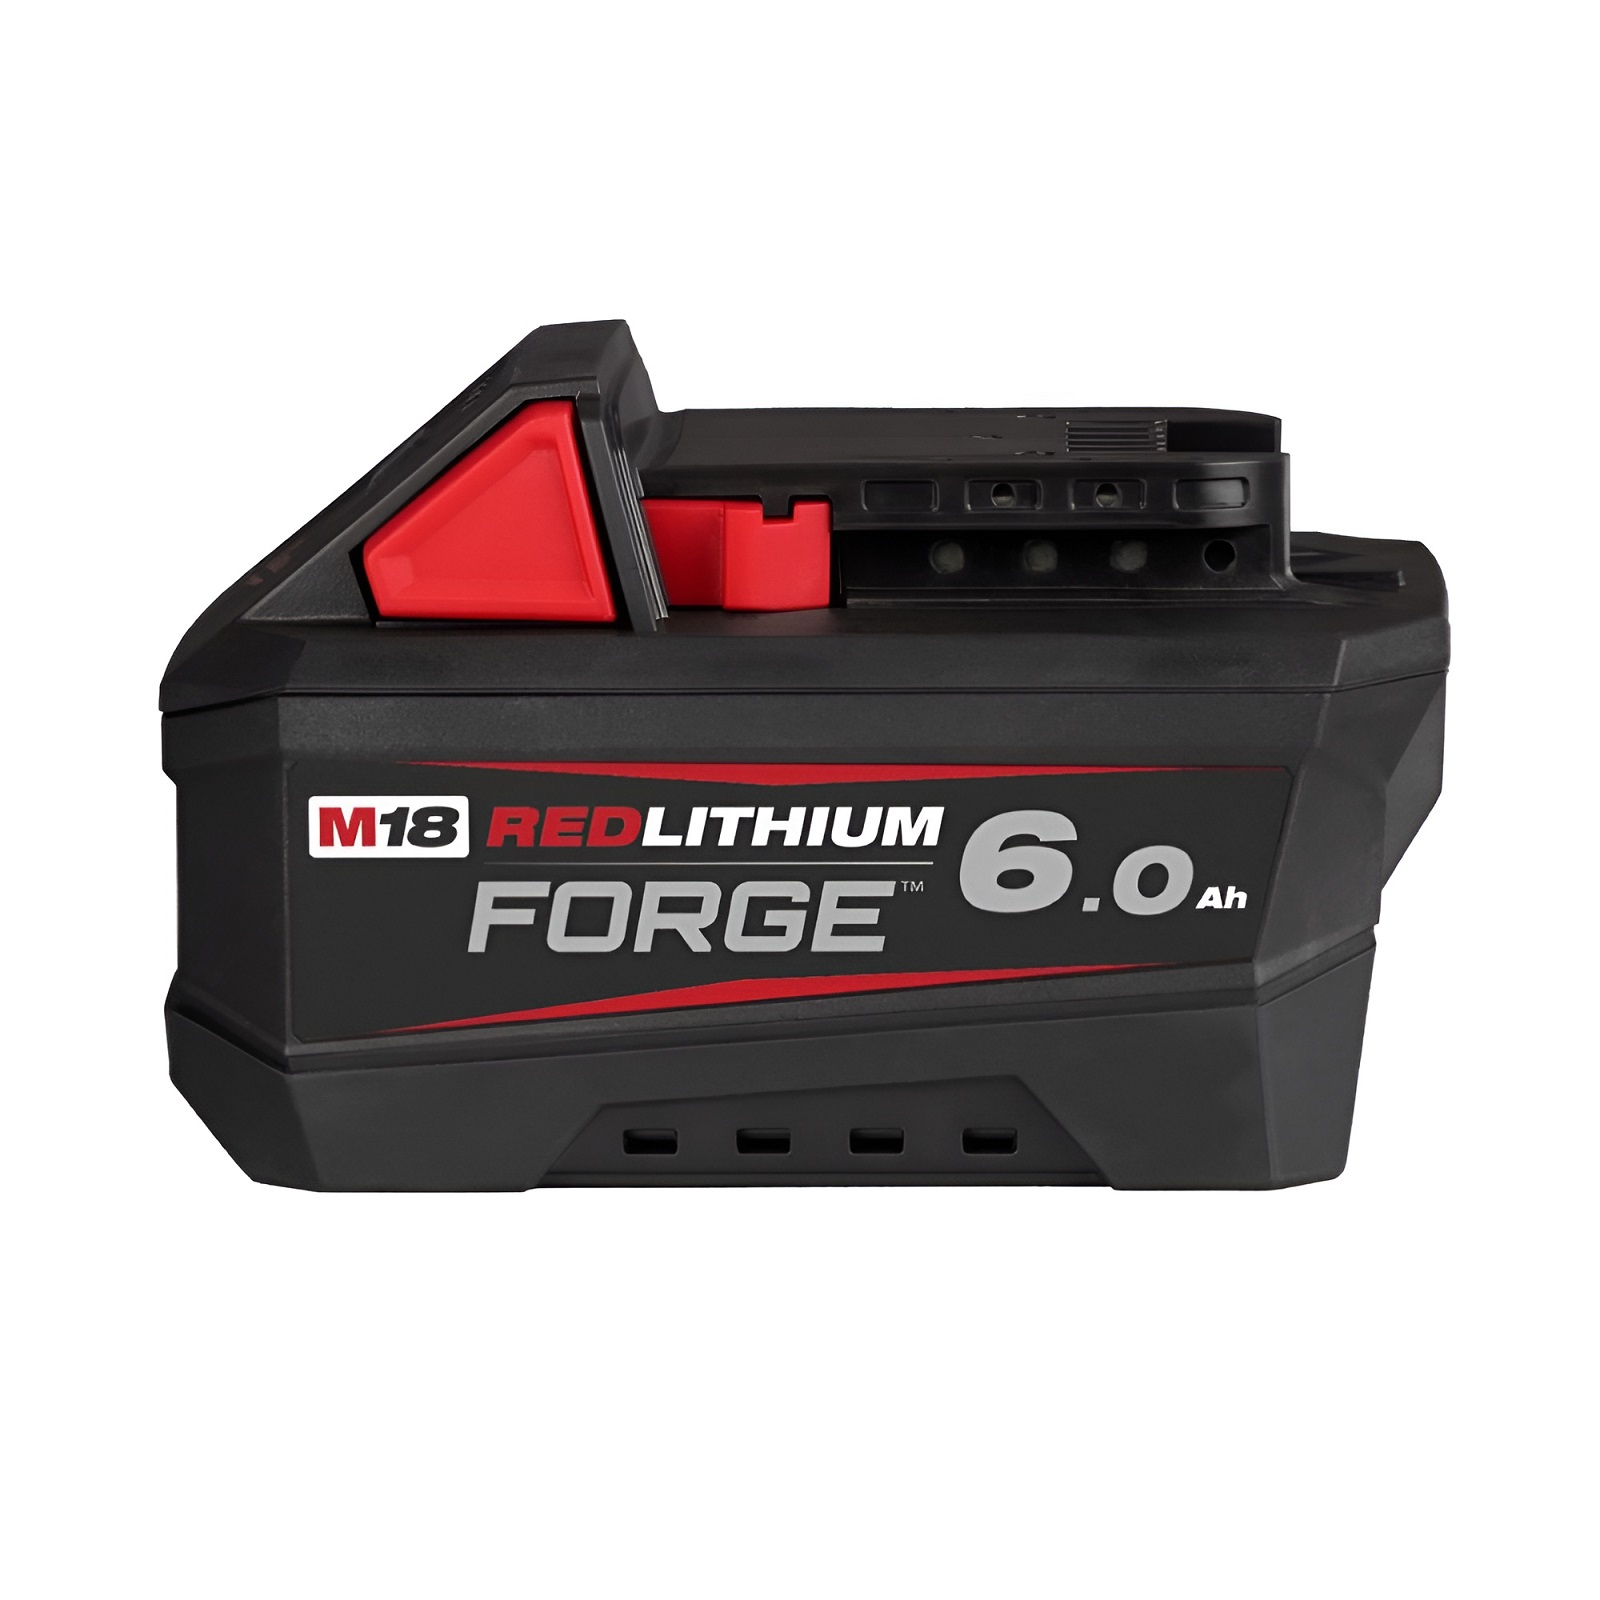 Sản phẩm PIN M18™ FORGE™ 6.0Ah – M18 FB6 đến từ Milwaukee Tool